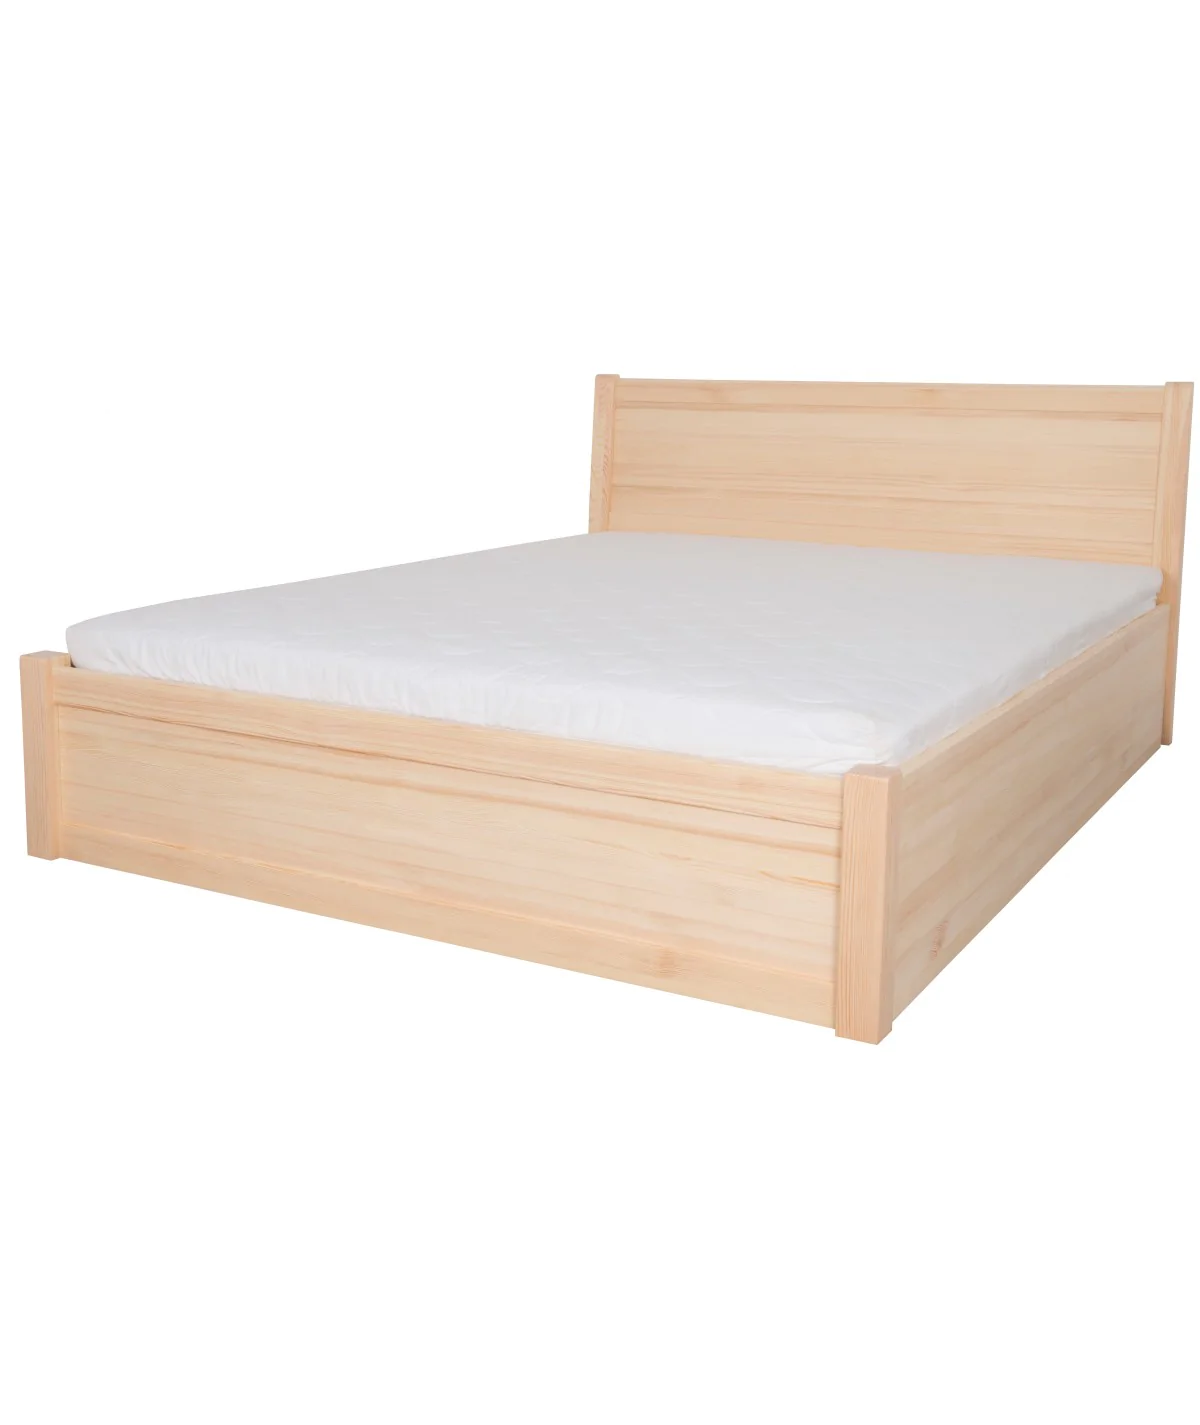 Łóżko sosnowe JASPIS 3 STOLMIS podnoszone na ramie drewnianej